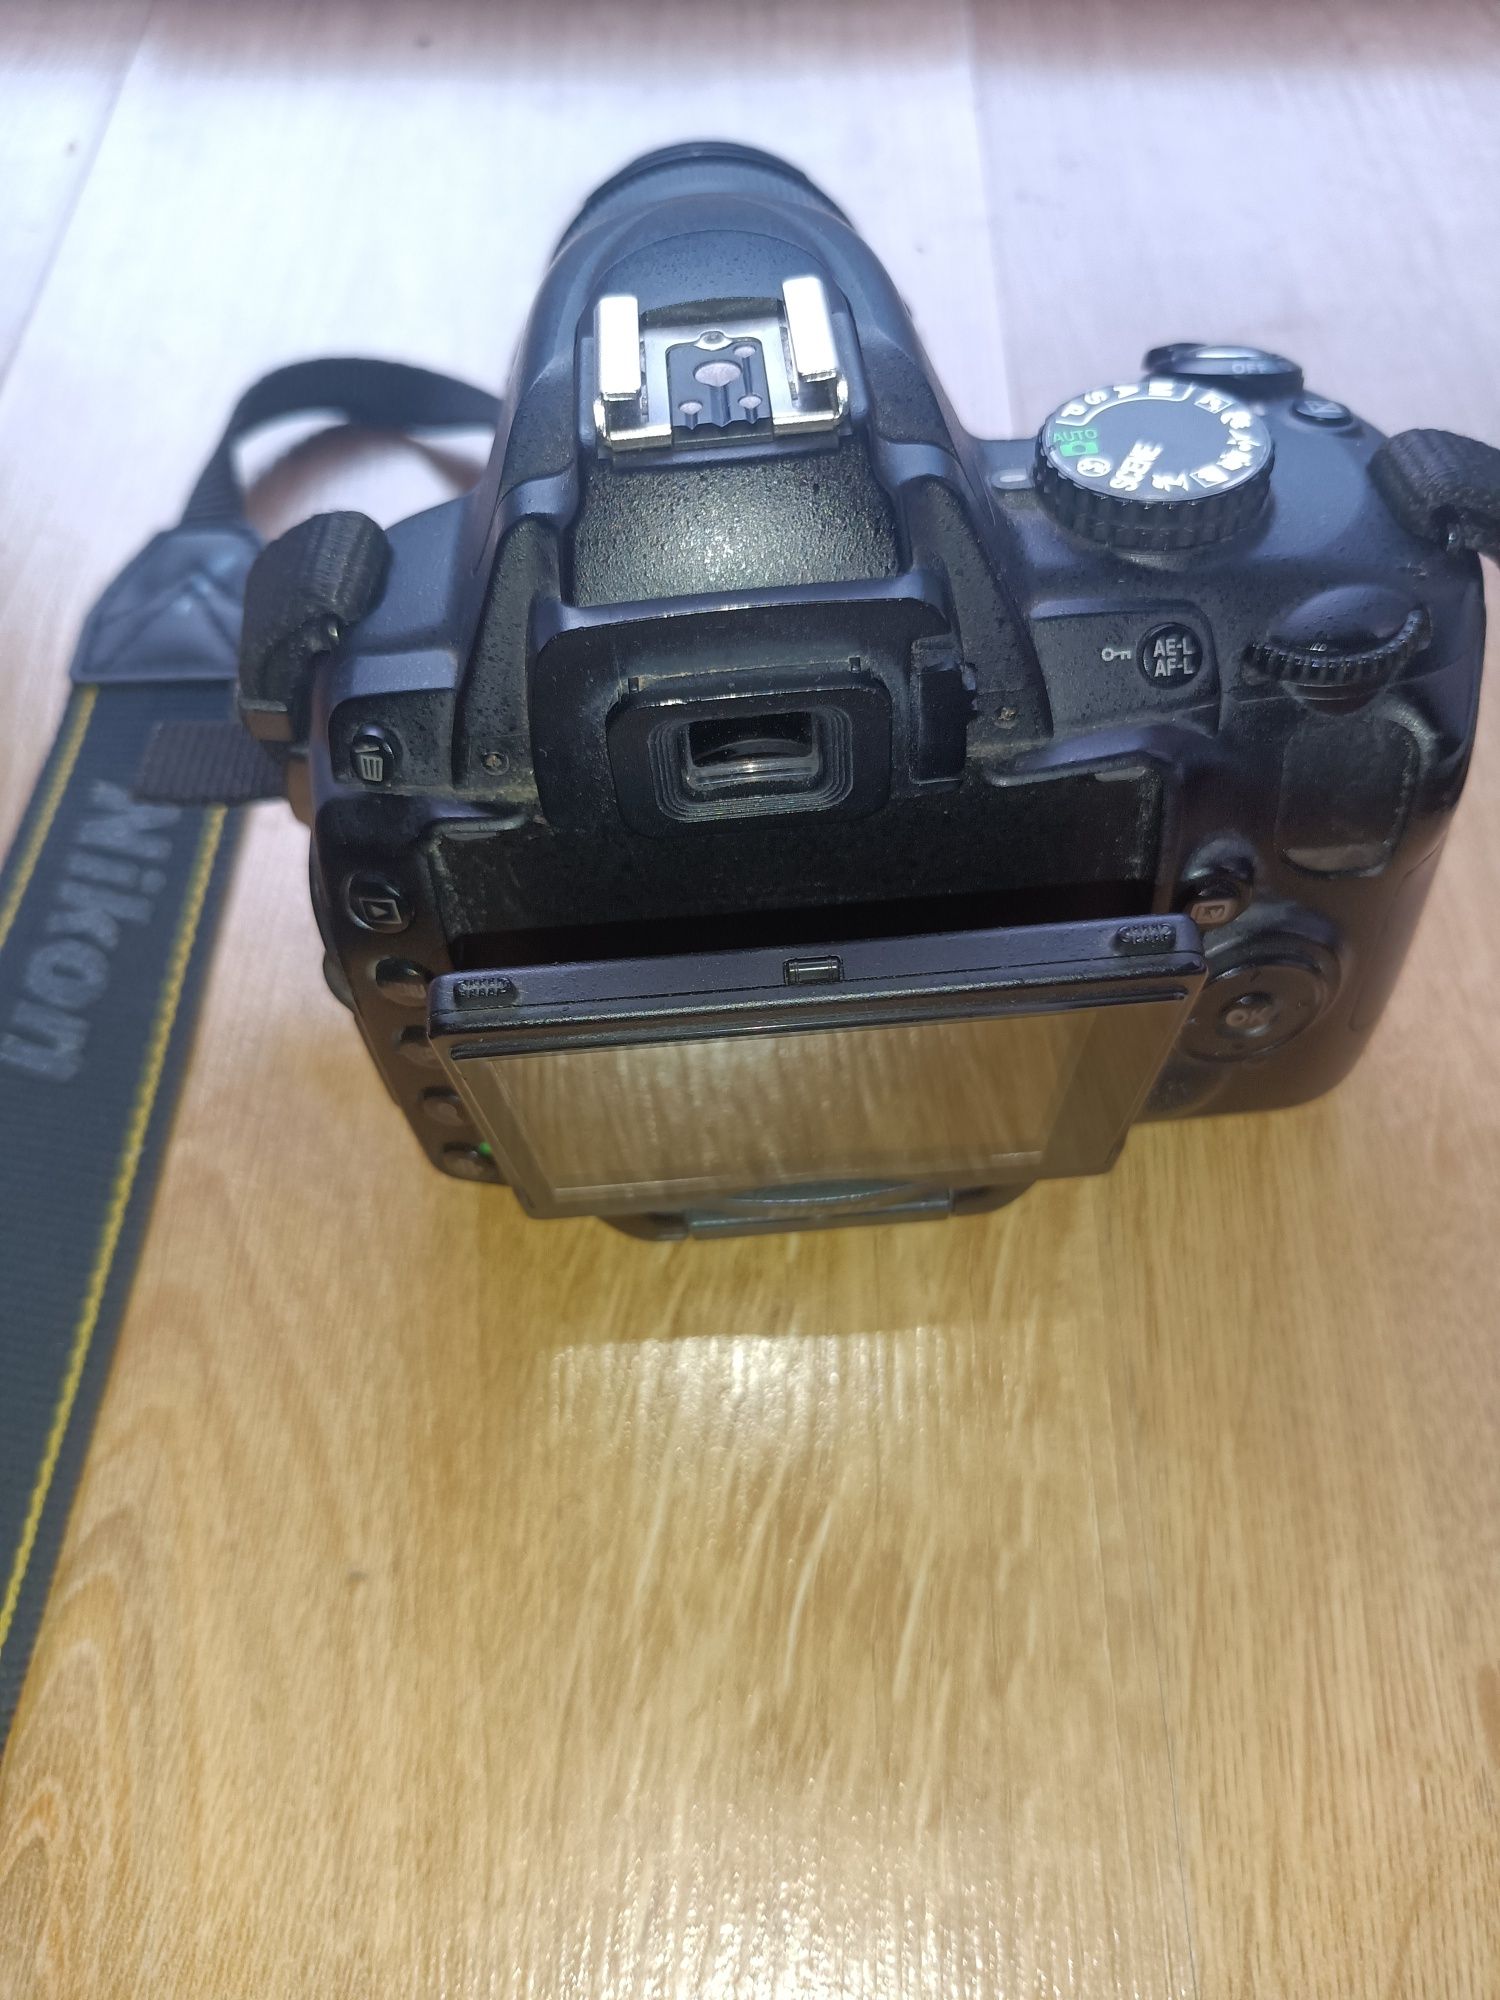 Lustrzanka Cyfrowa Nikon D 5000 + Obiektyw +Ładowarka +Akumulator :)